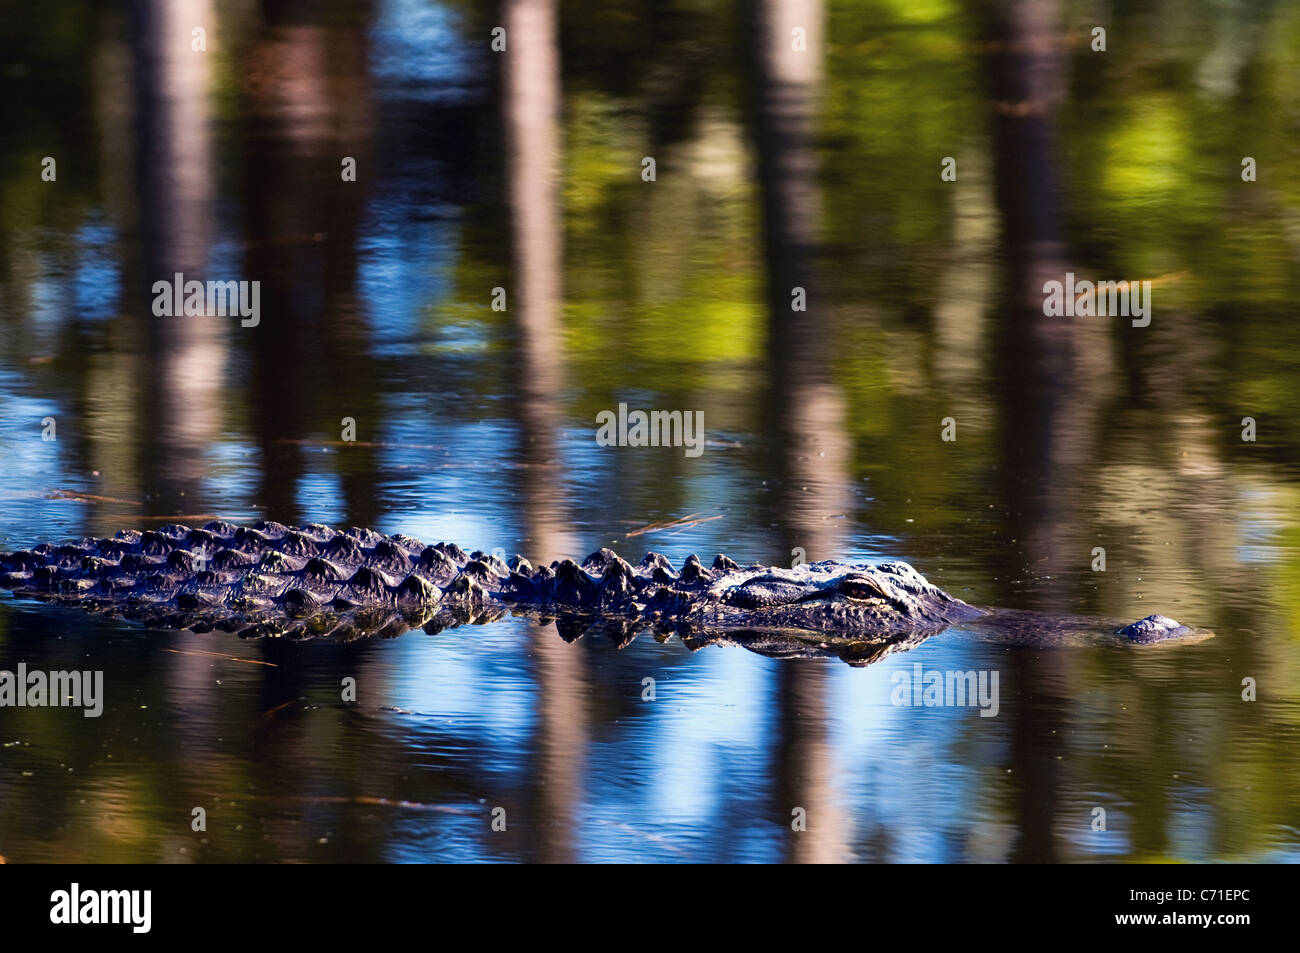 Un Alligator est partiellement submergés dans un lagon de l'île de Hilton Head, Caroline du Sud. Banque D'Images